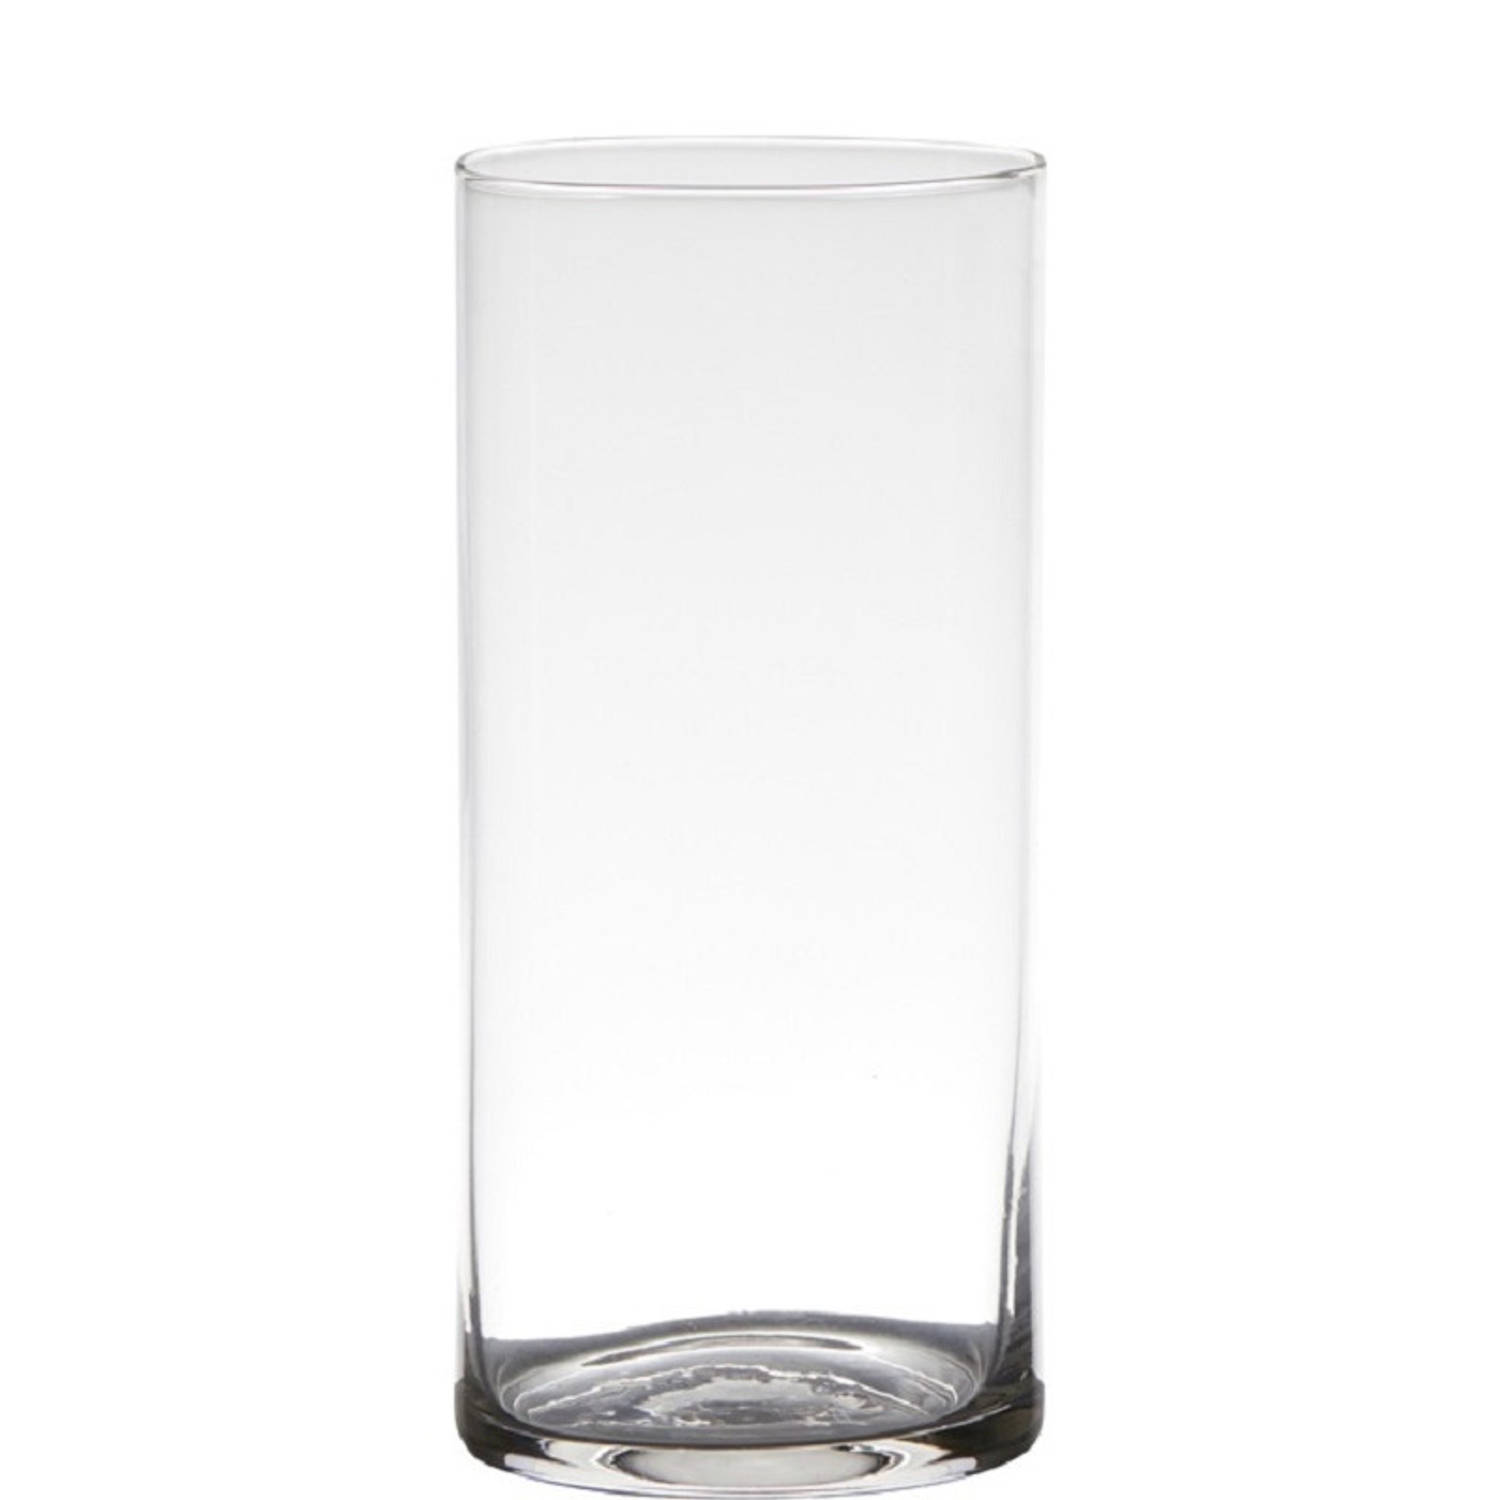 Transparante home-basics Cylinder vorm vaas/vazen van glas 19 x 9 cm - Bloemen/takken/boeketten vaas voor binnen gebruik